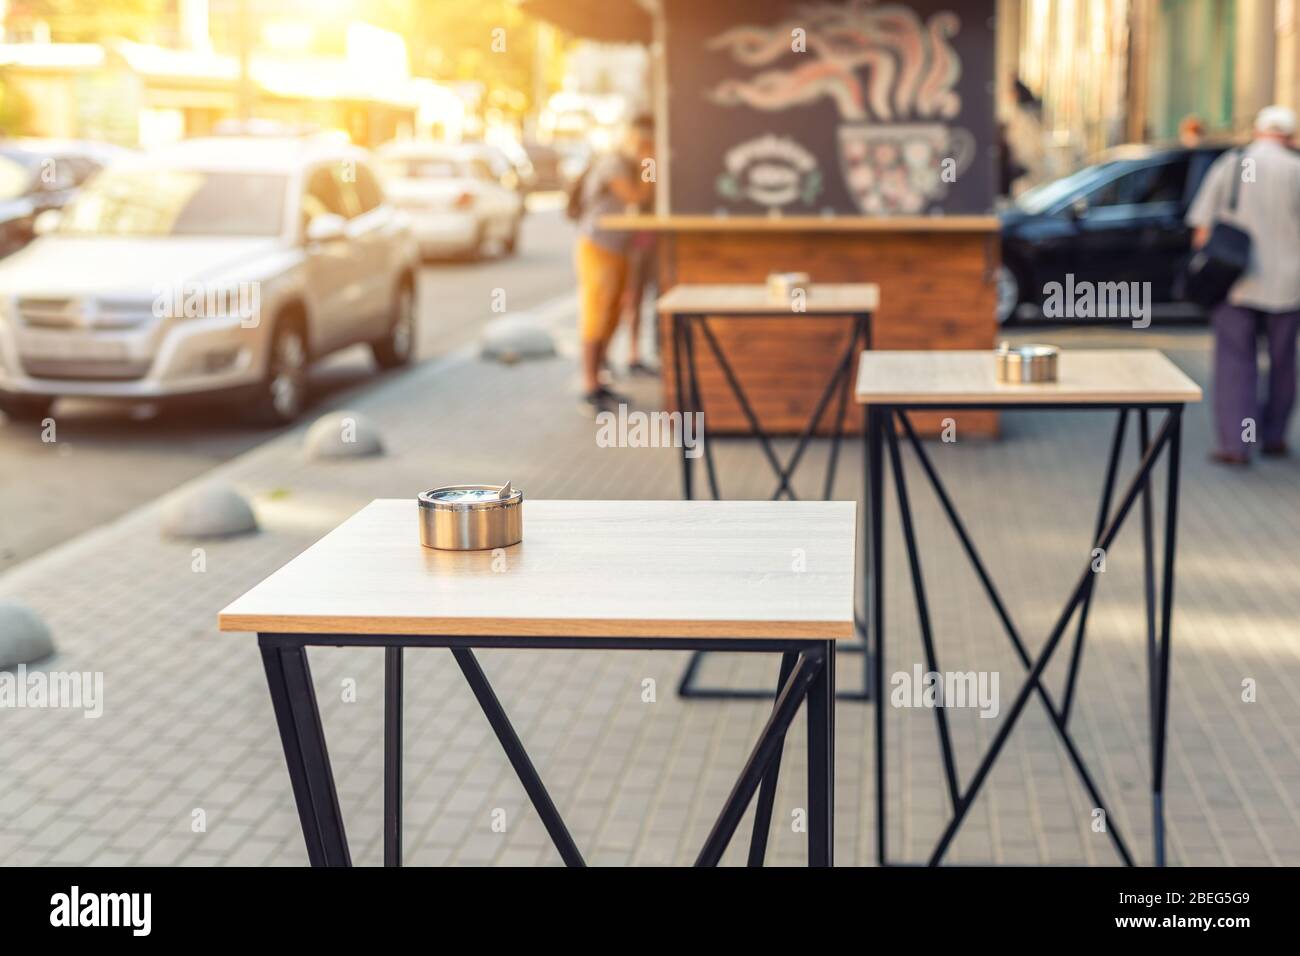 Europa calle urbano bistro café mesas de comedor sin personas durante la cuarentena. Snack bar con comida para ir al atardecer o al amanecer por la mañana Foto de stock